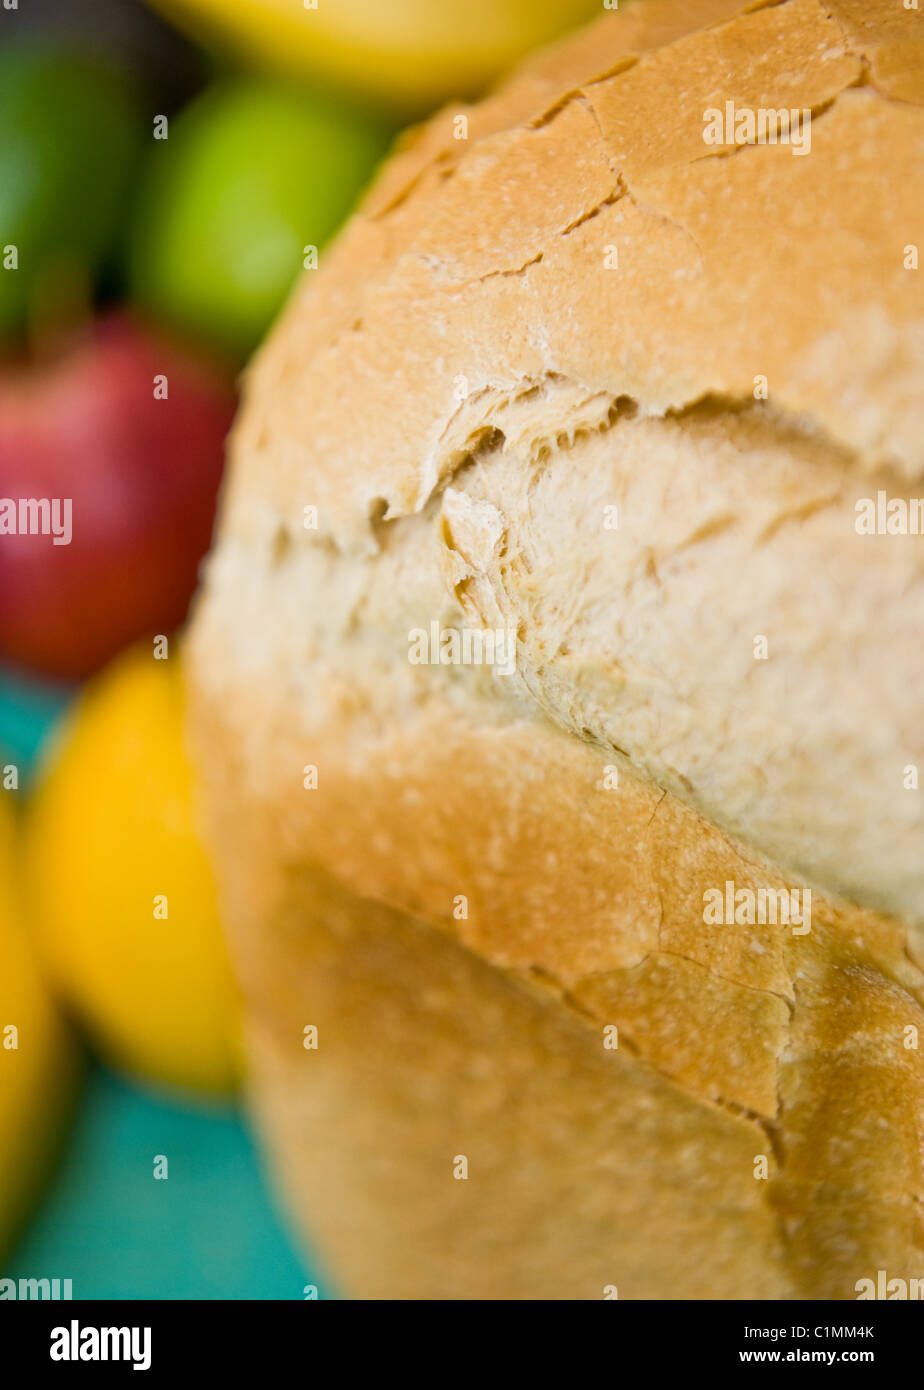 Un pain frais cuit de pain français maison organique, pris dans une machine à pain Banque D'Images